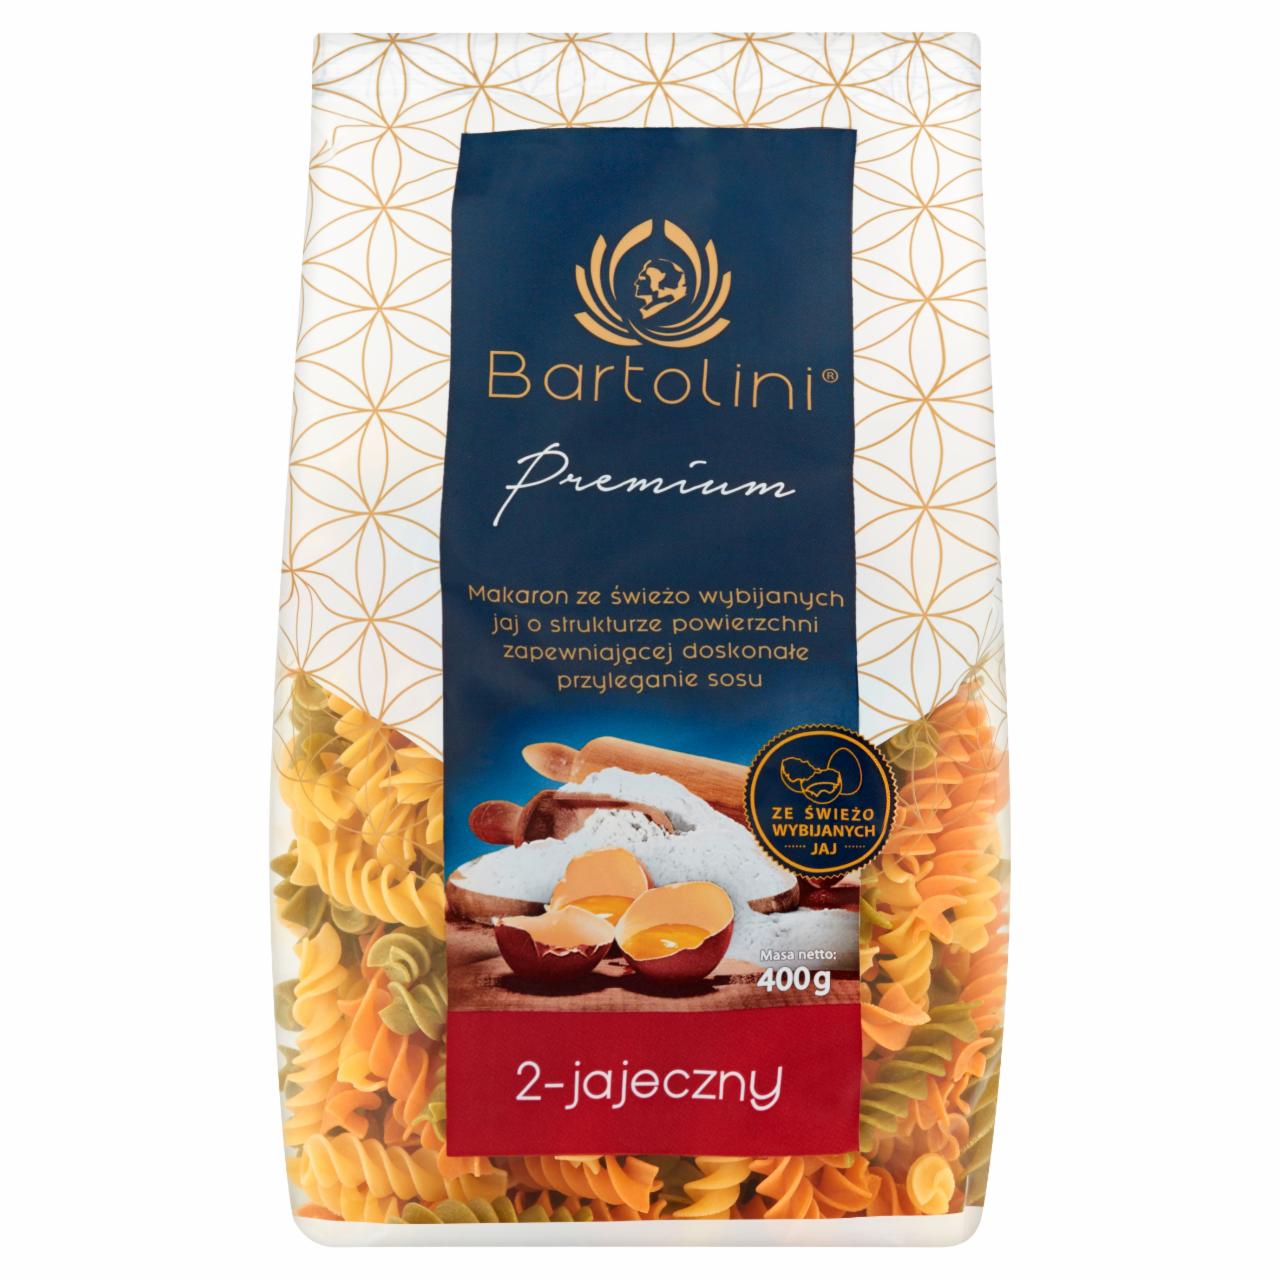 Zdjęcia - Bartolini Premium Makaron 2-jajeczny świderek nr 2 smakowy 400 g